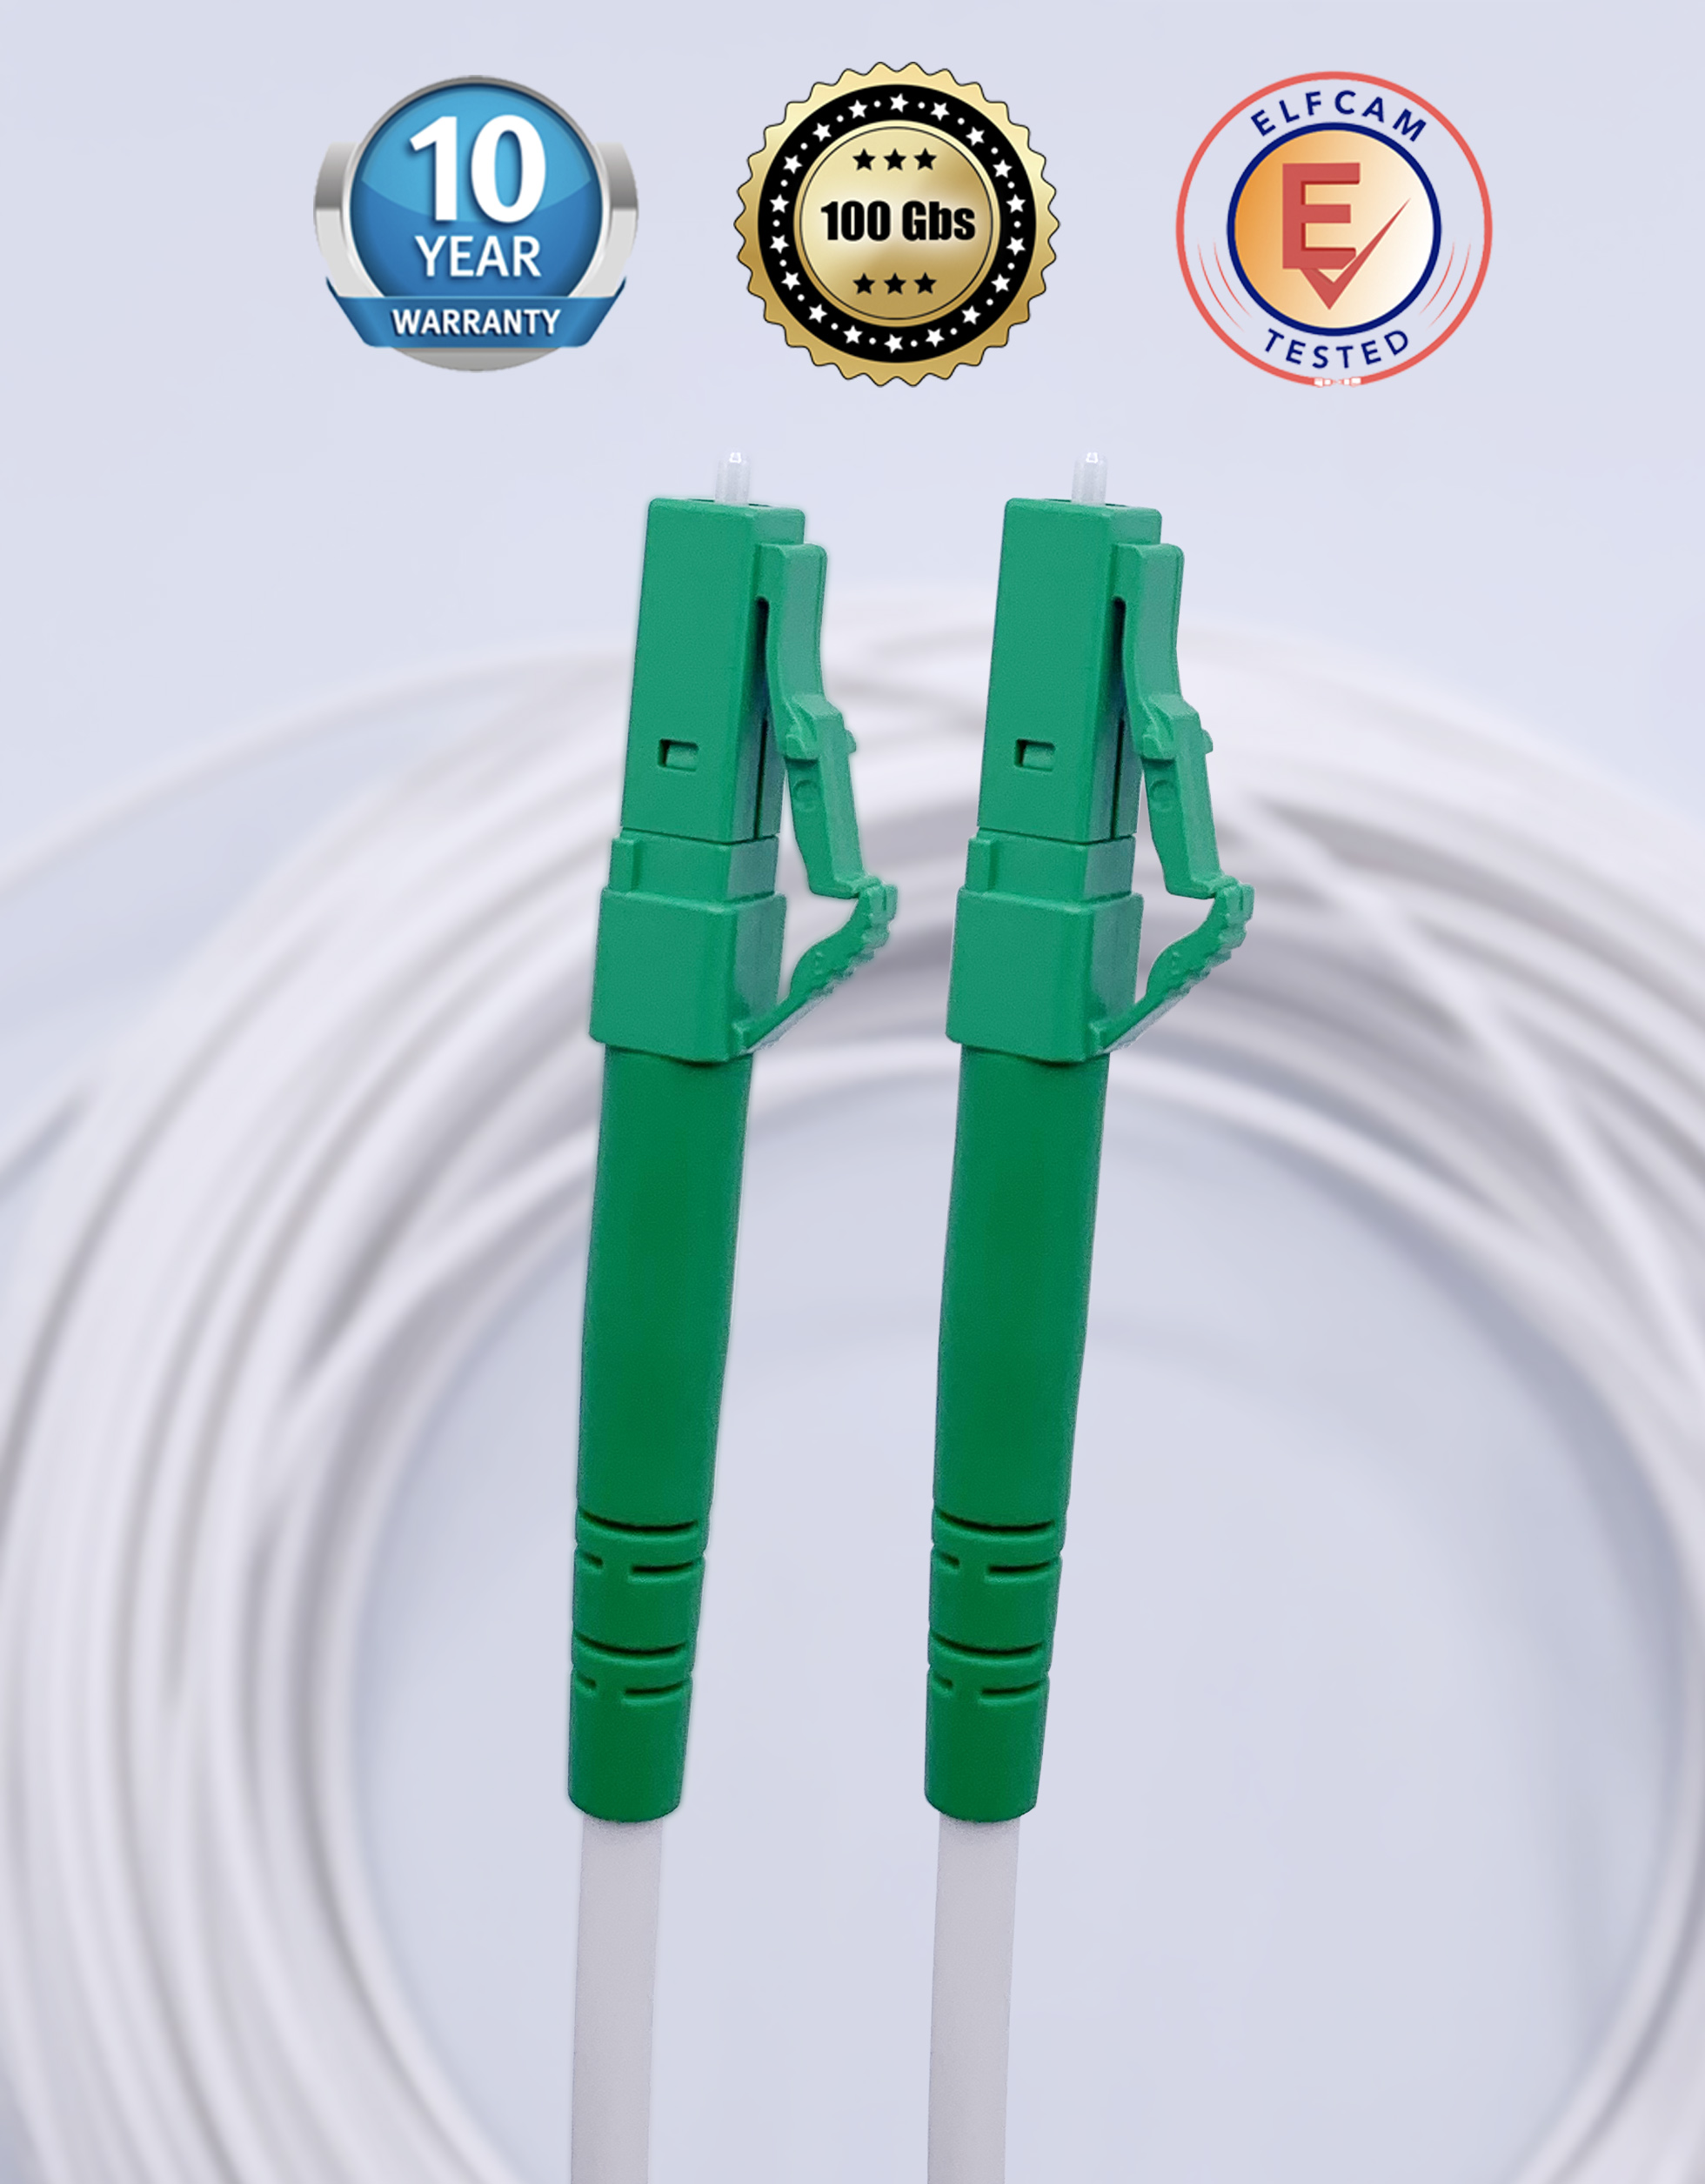 Cable de fibra óptica de 10 m SC/APC a SC/APC monomodo simplex 9